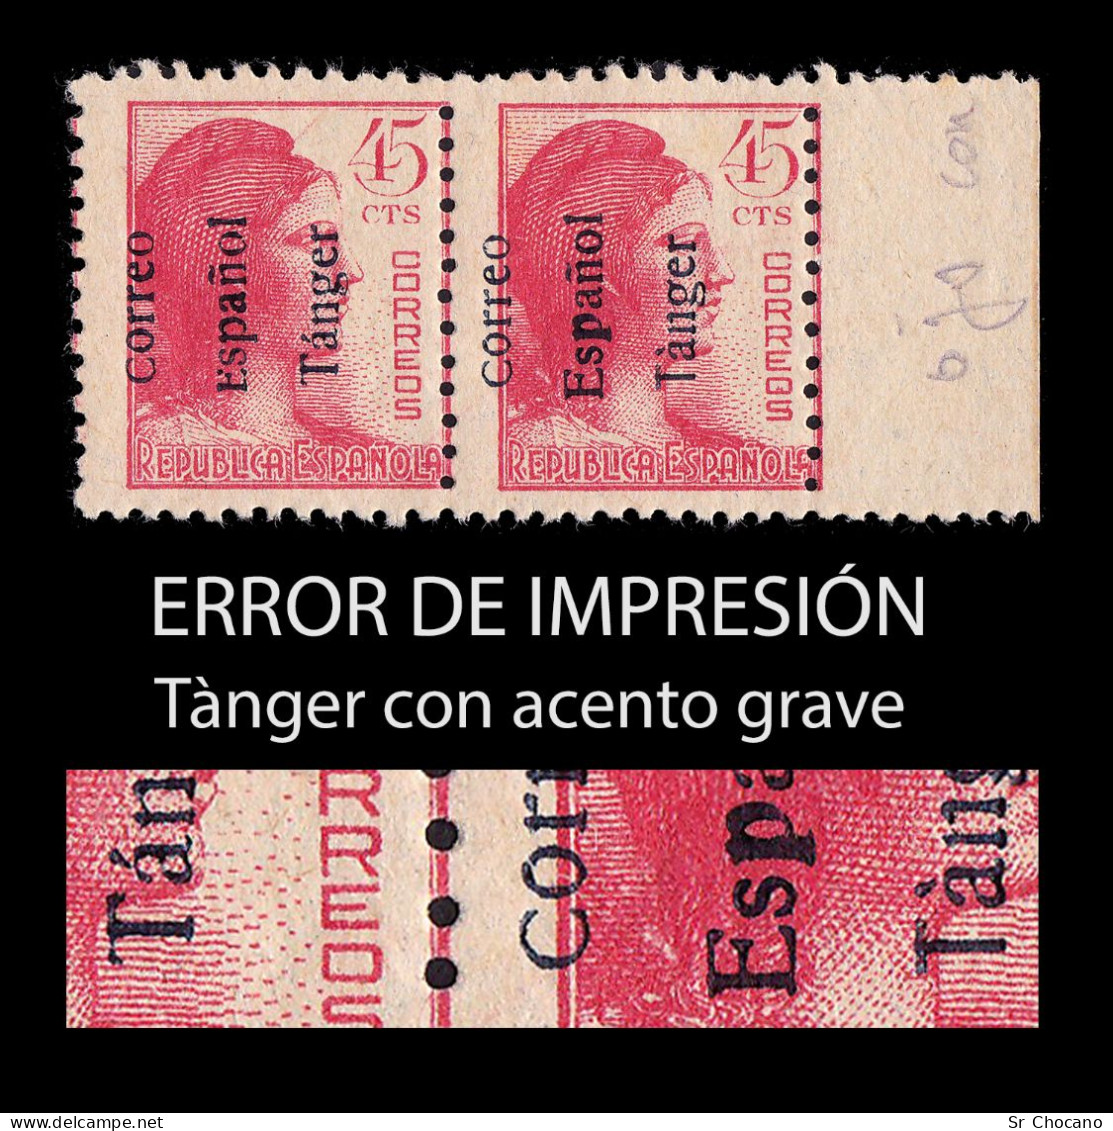 TANGER.1938. España.45c.Blq2.Error Impresión.MNH.Edifil 103he - Variedades & Curiosidades